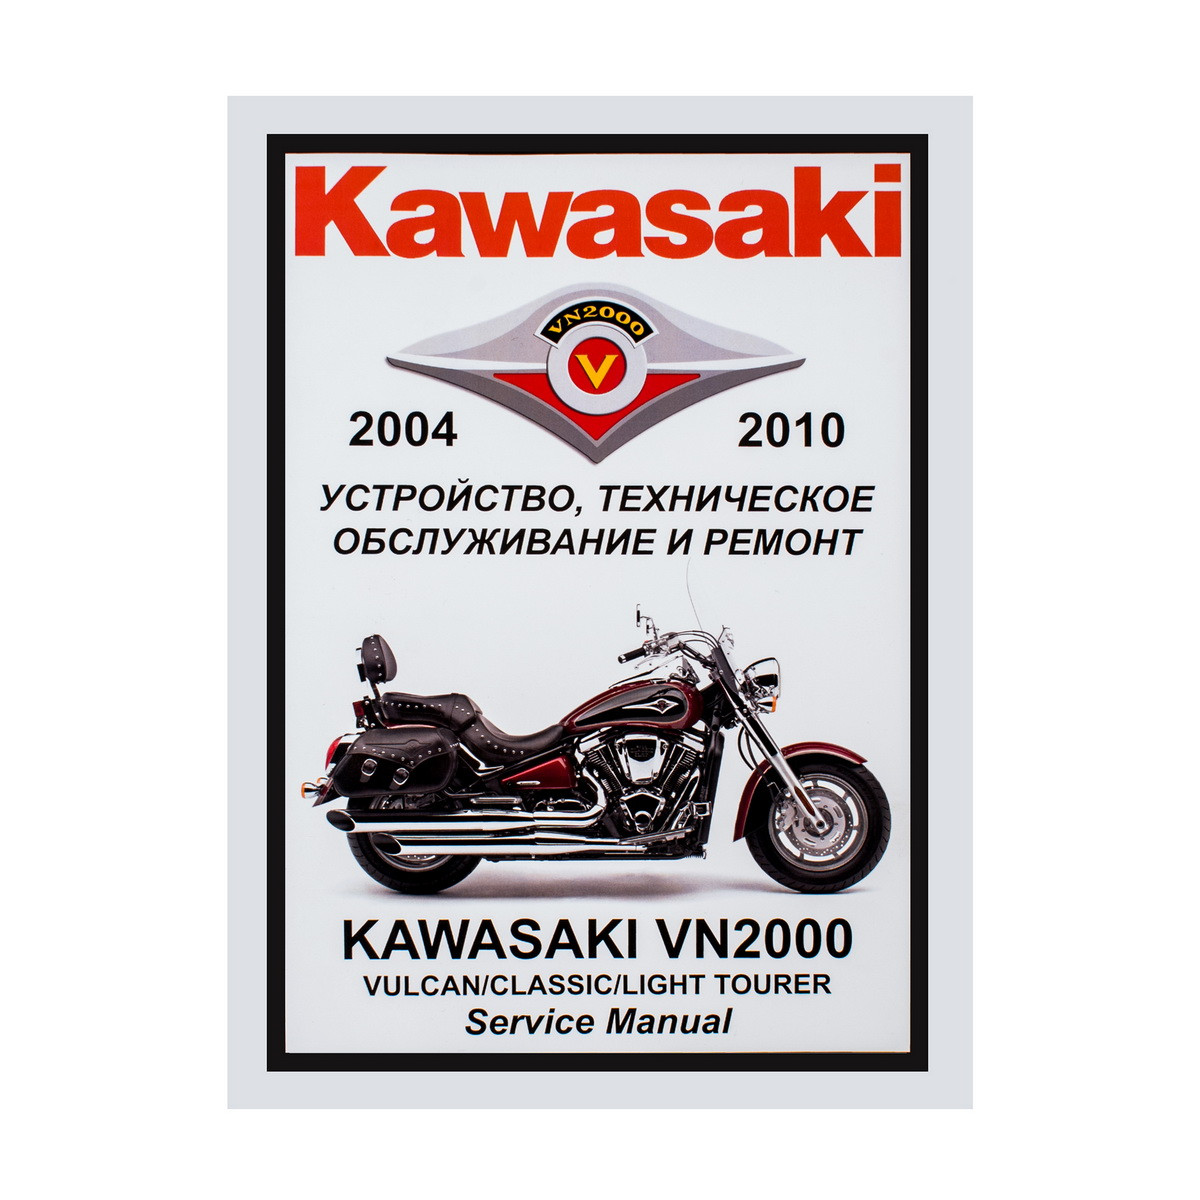 Тест-драйв kawasaki vn 800 / кавасаки . kawasaki vn 800 vulcan, 2003 г.в.